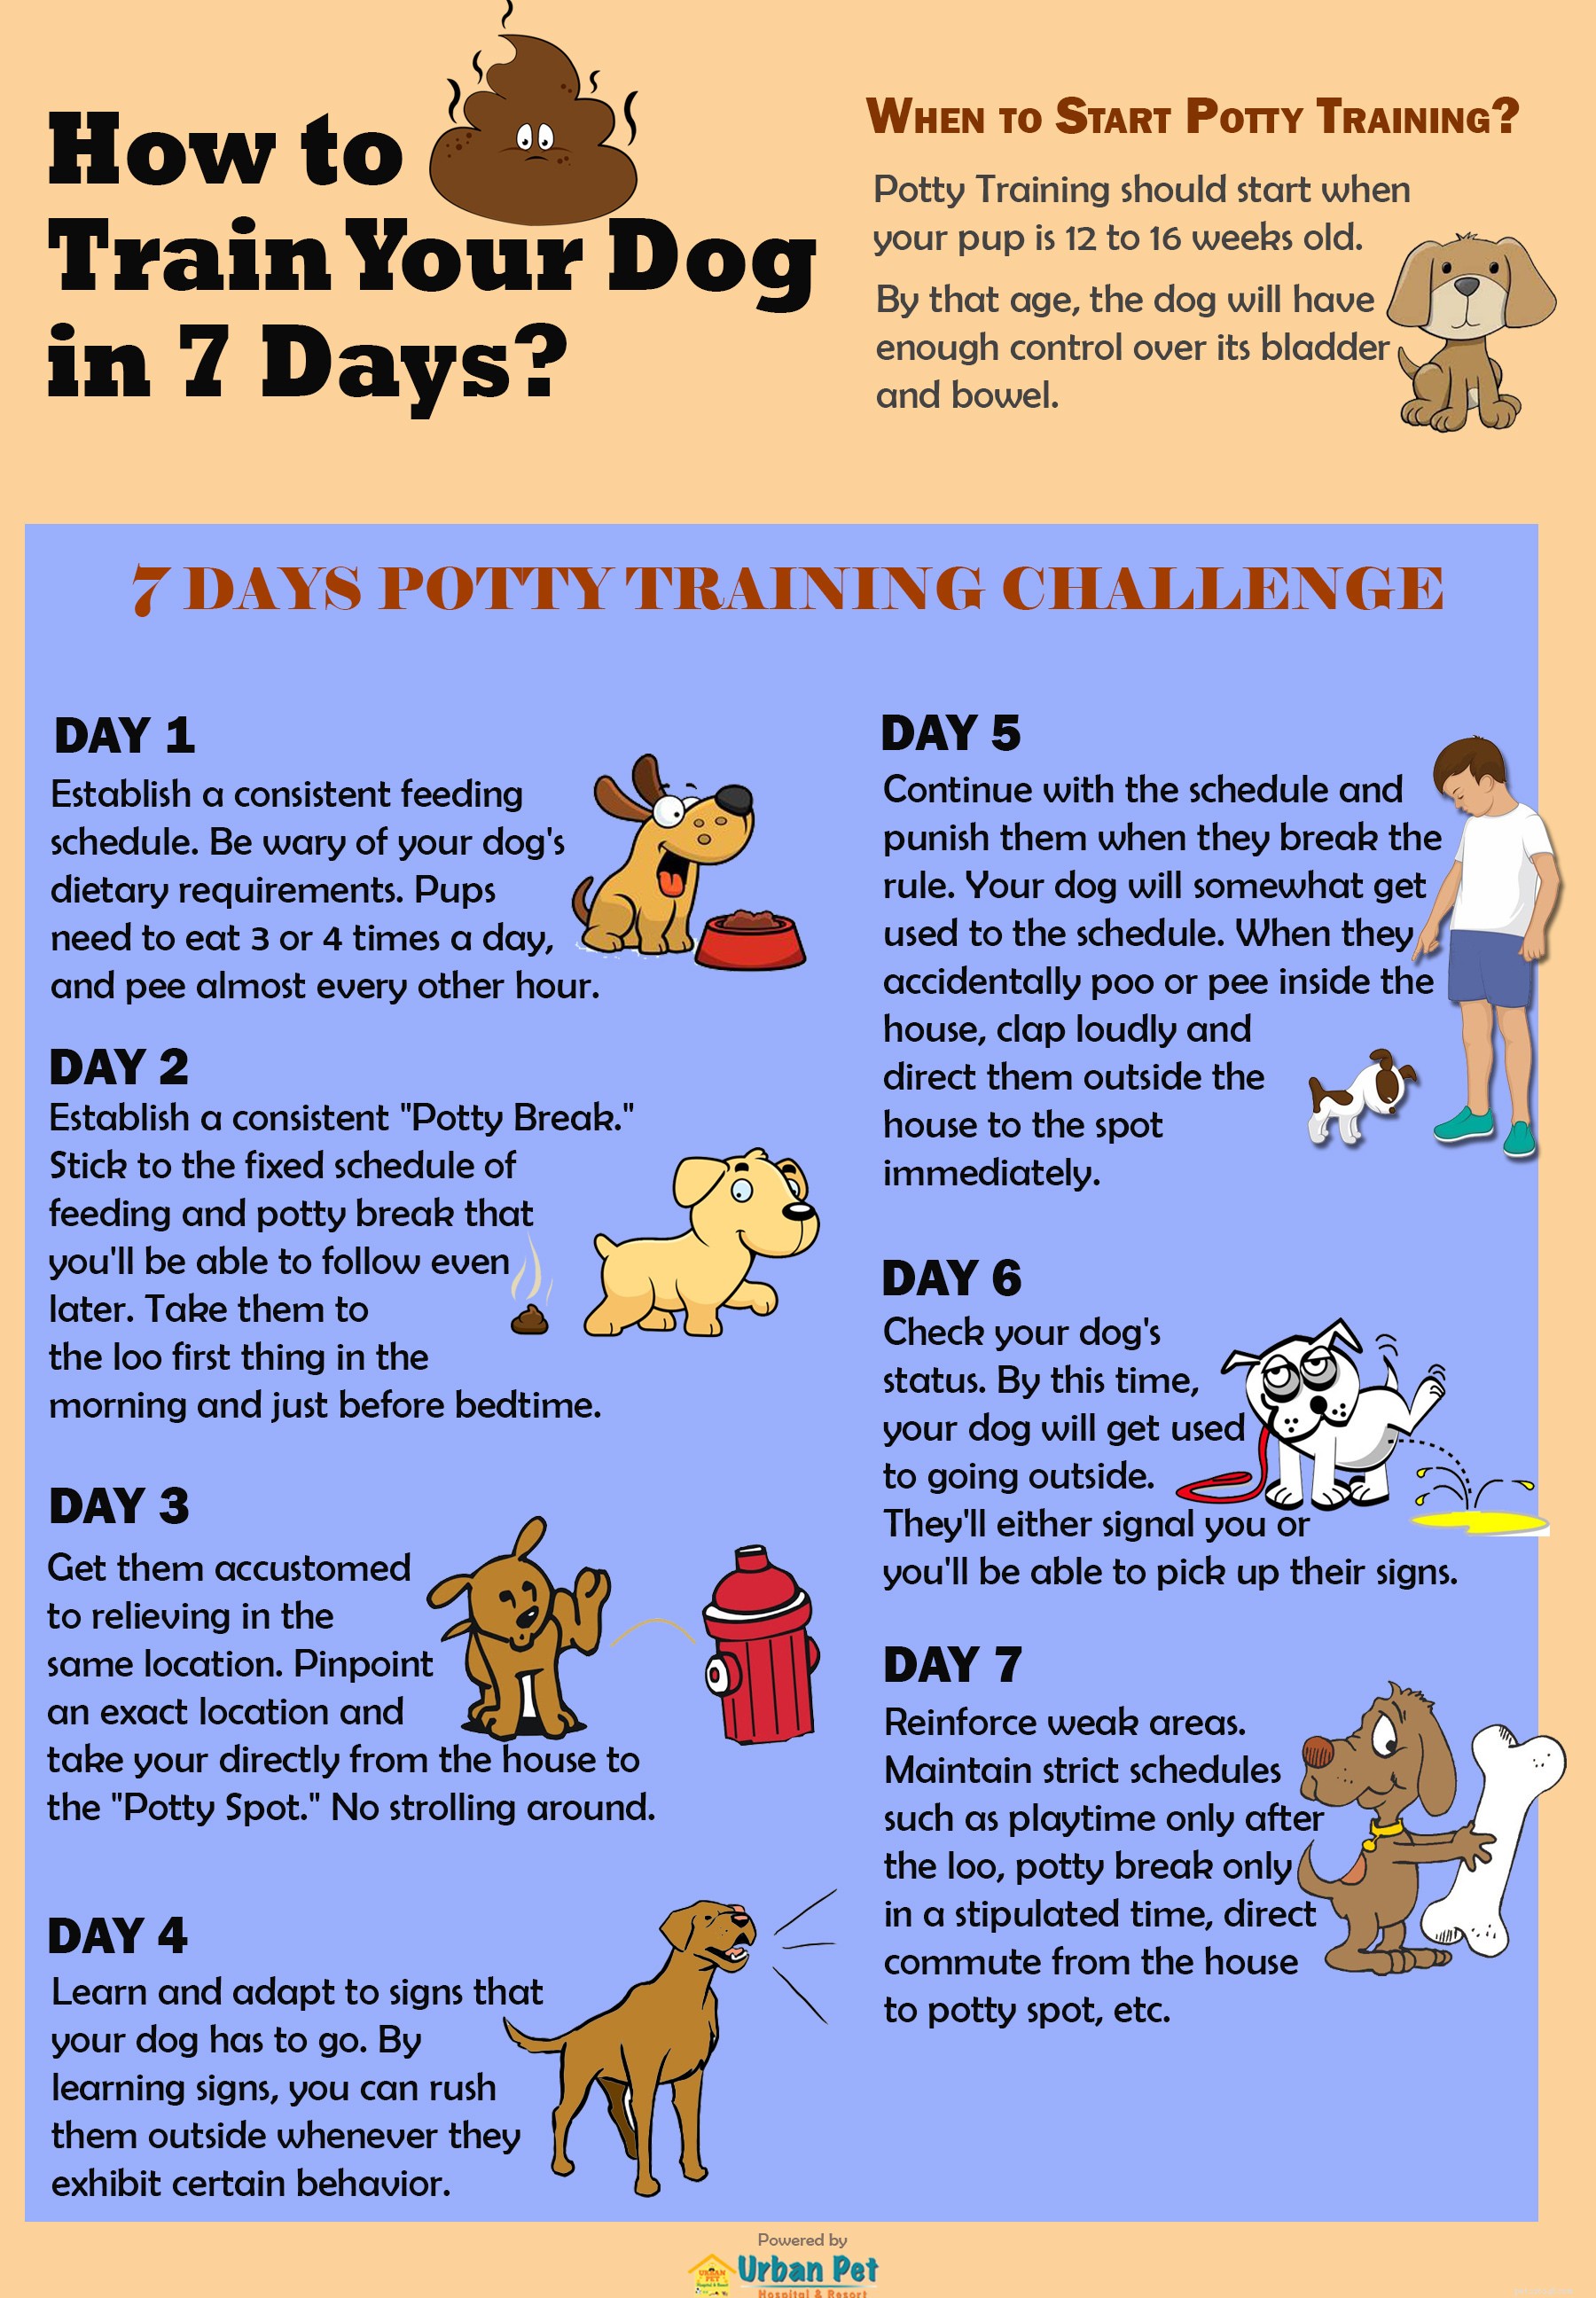 강아지 배변 훈련을 단 7일 만에 하려면 어떻게 해야 합니까?